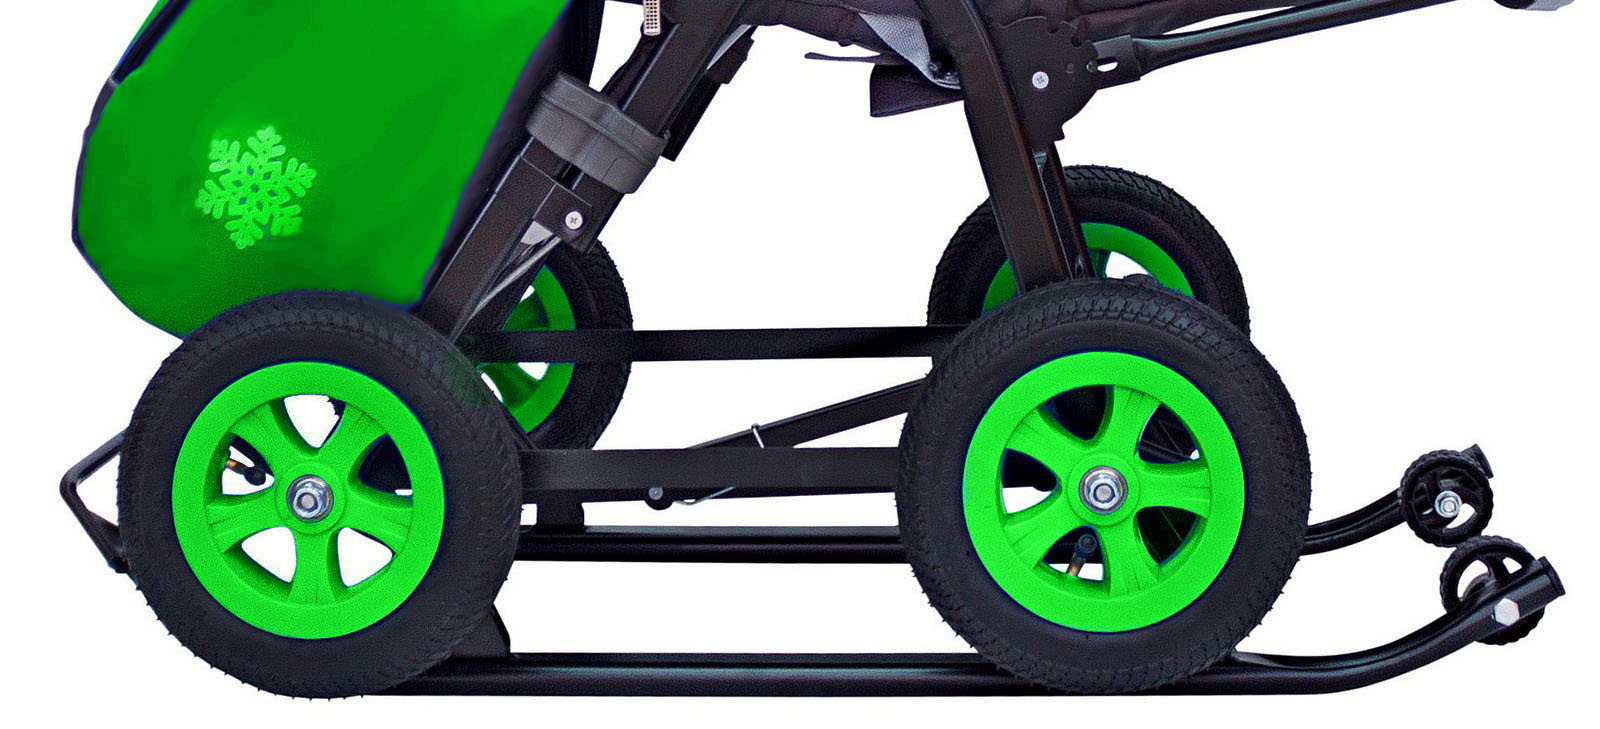 Санки-коляска Snow Galaxy - City-1-1 - Серый Зайка, цвет зеленый на больших надувных колесах, сумка, варежки  